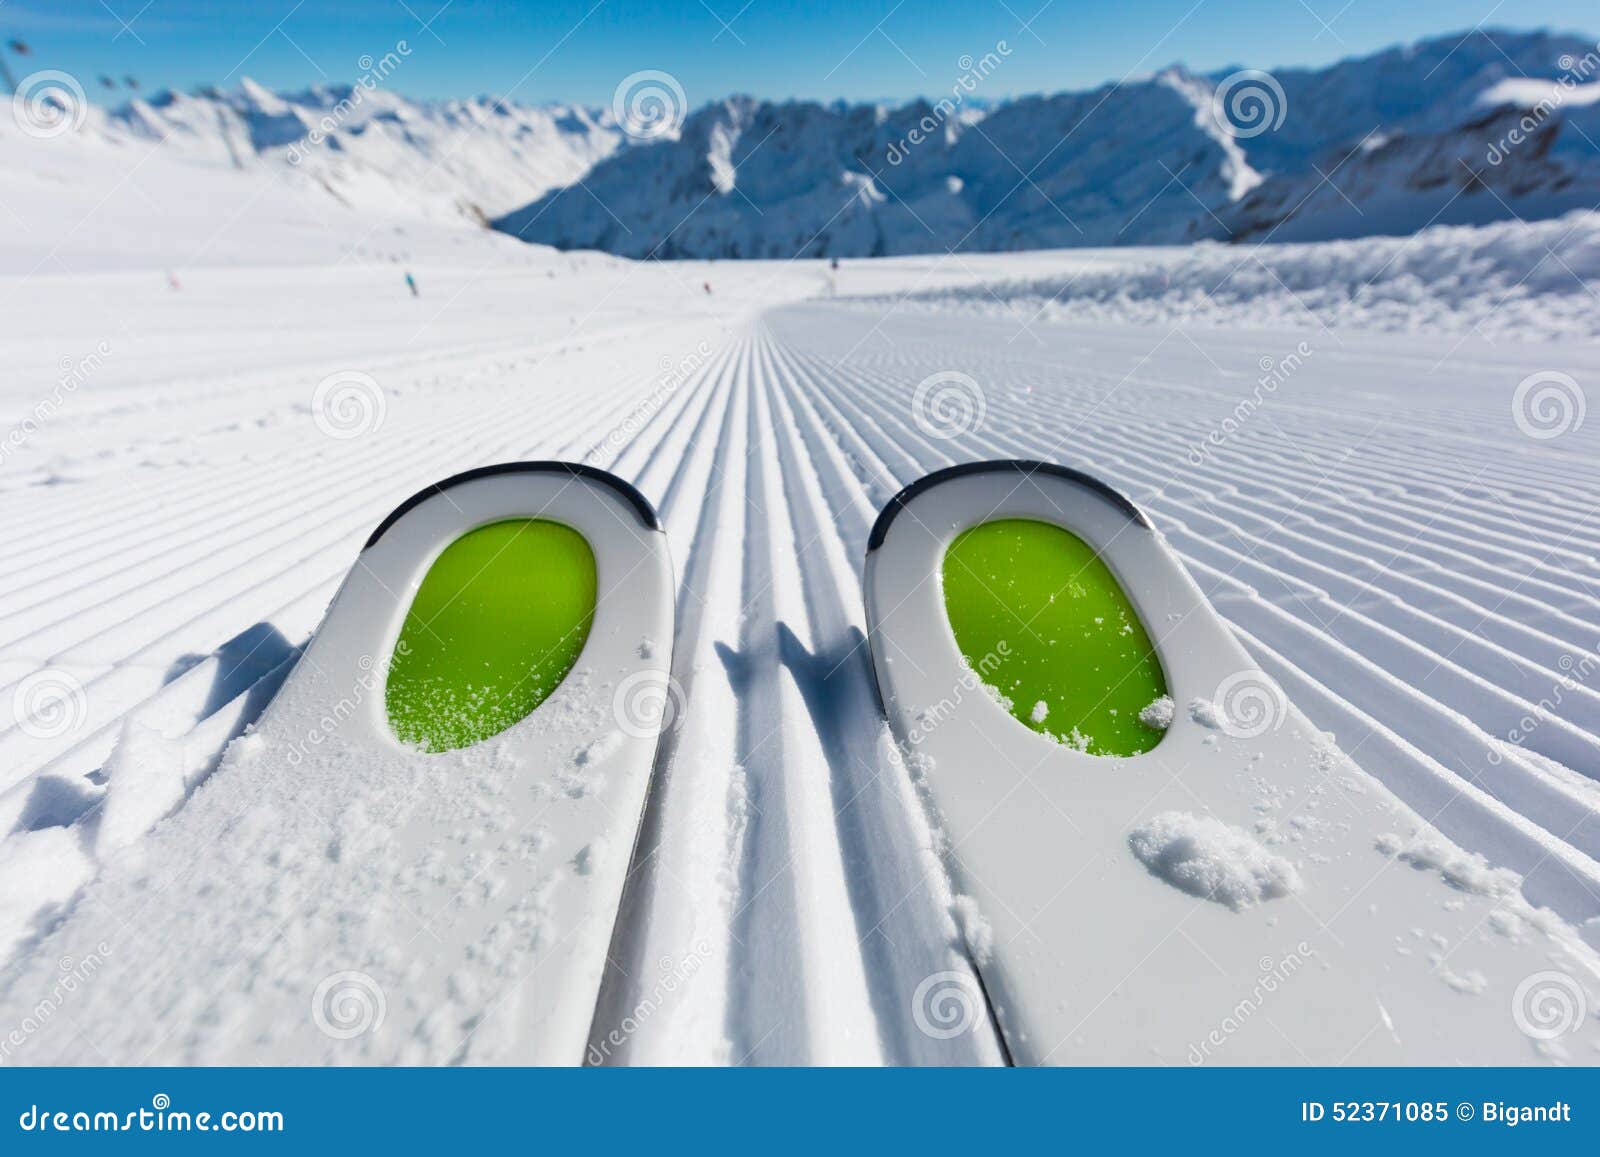 ski tips on ski piste